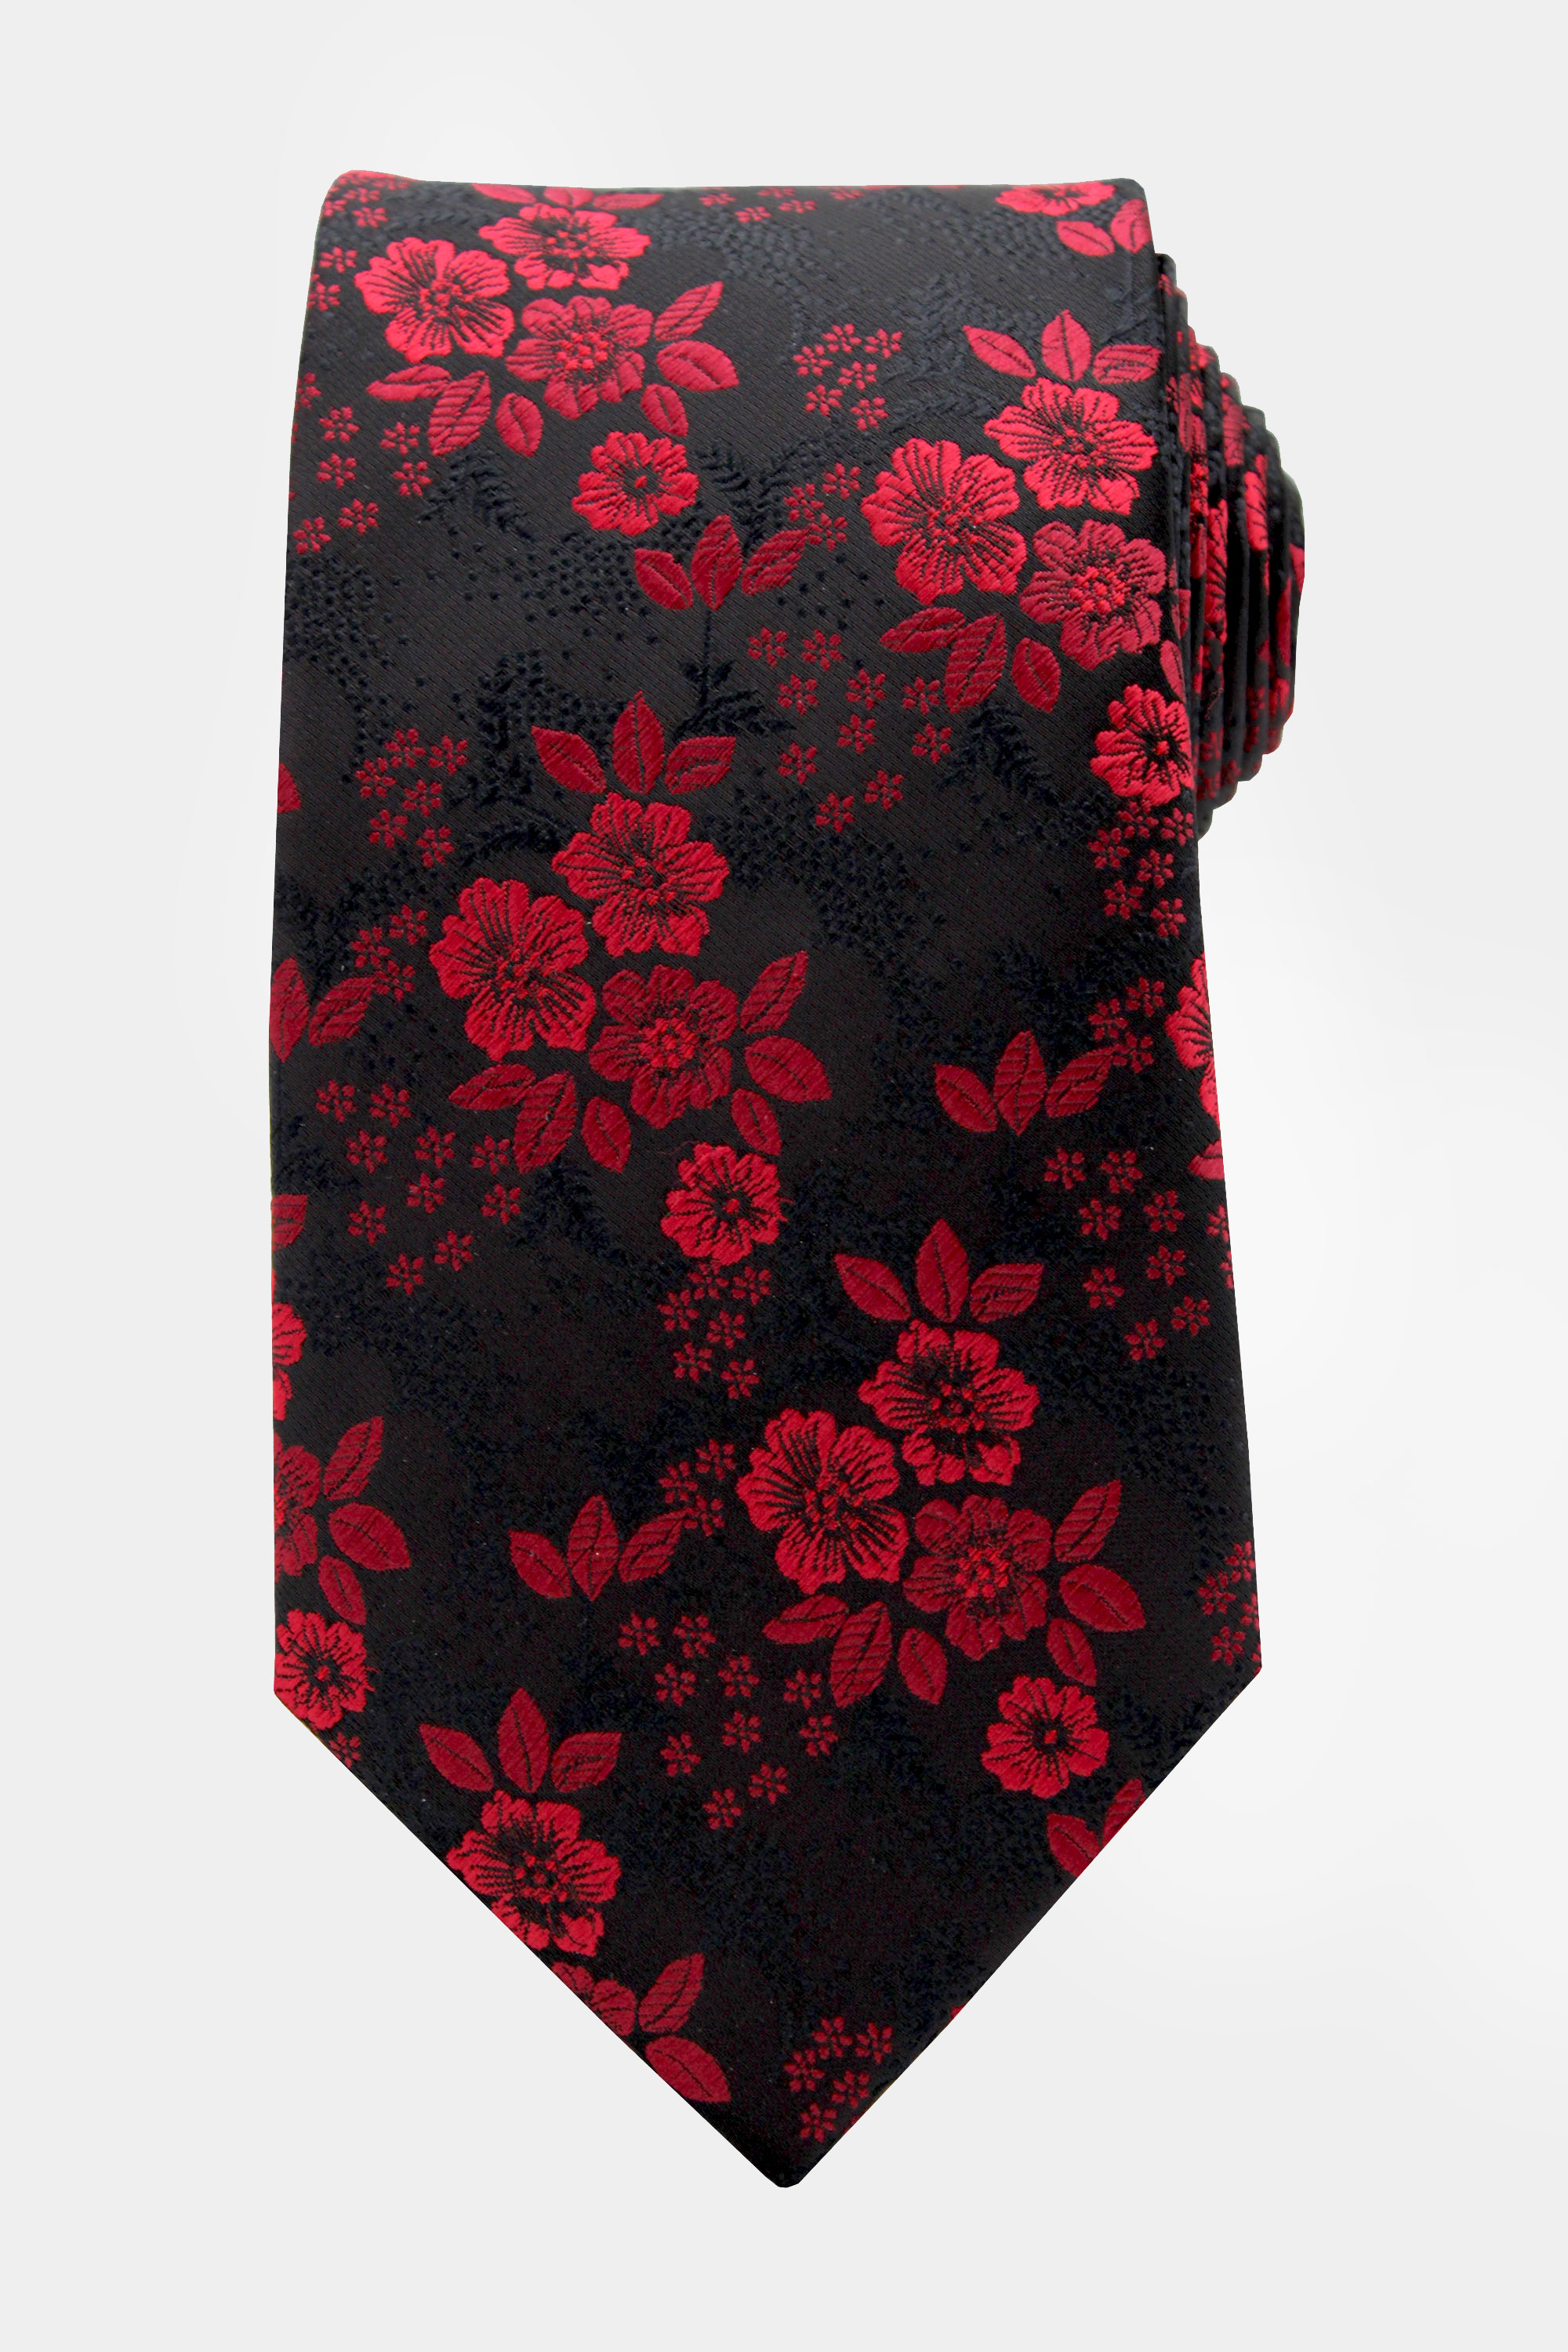 Burgundy-and-Black-Floral-Tie-from-Gentlemansguru.com